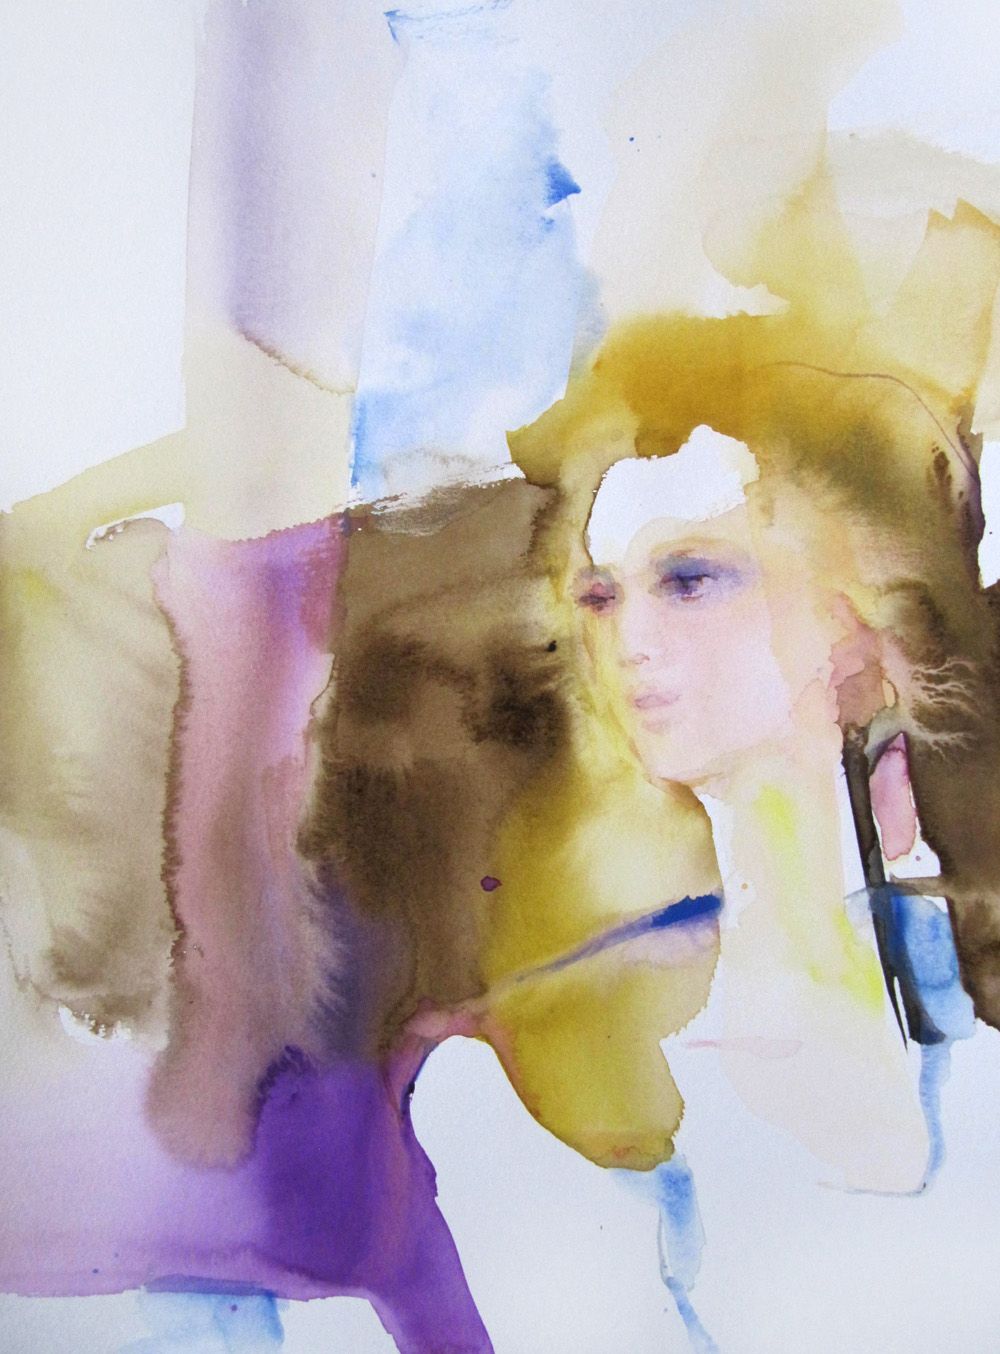 Brise matinale" di Sylvia Baldeva, dipinto colorato di una donna, ispirazione, leggerezza, stato d'animo, espressionismo, acquerello su carta Canson®.